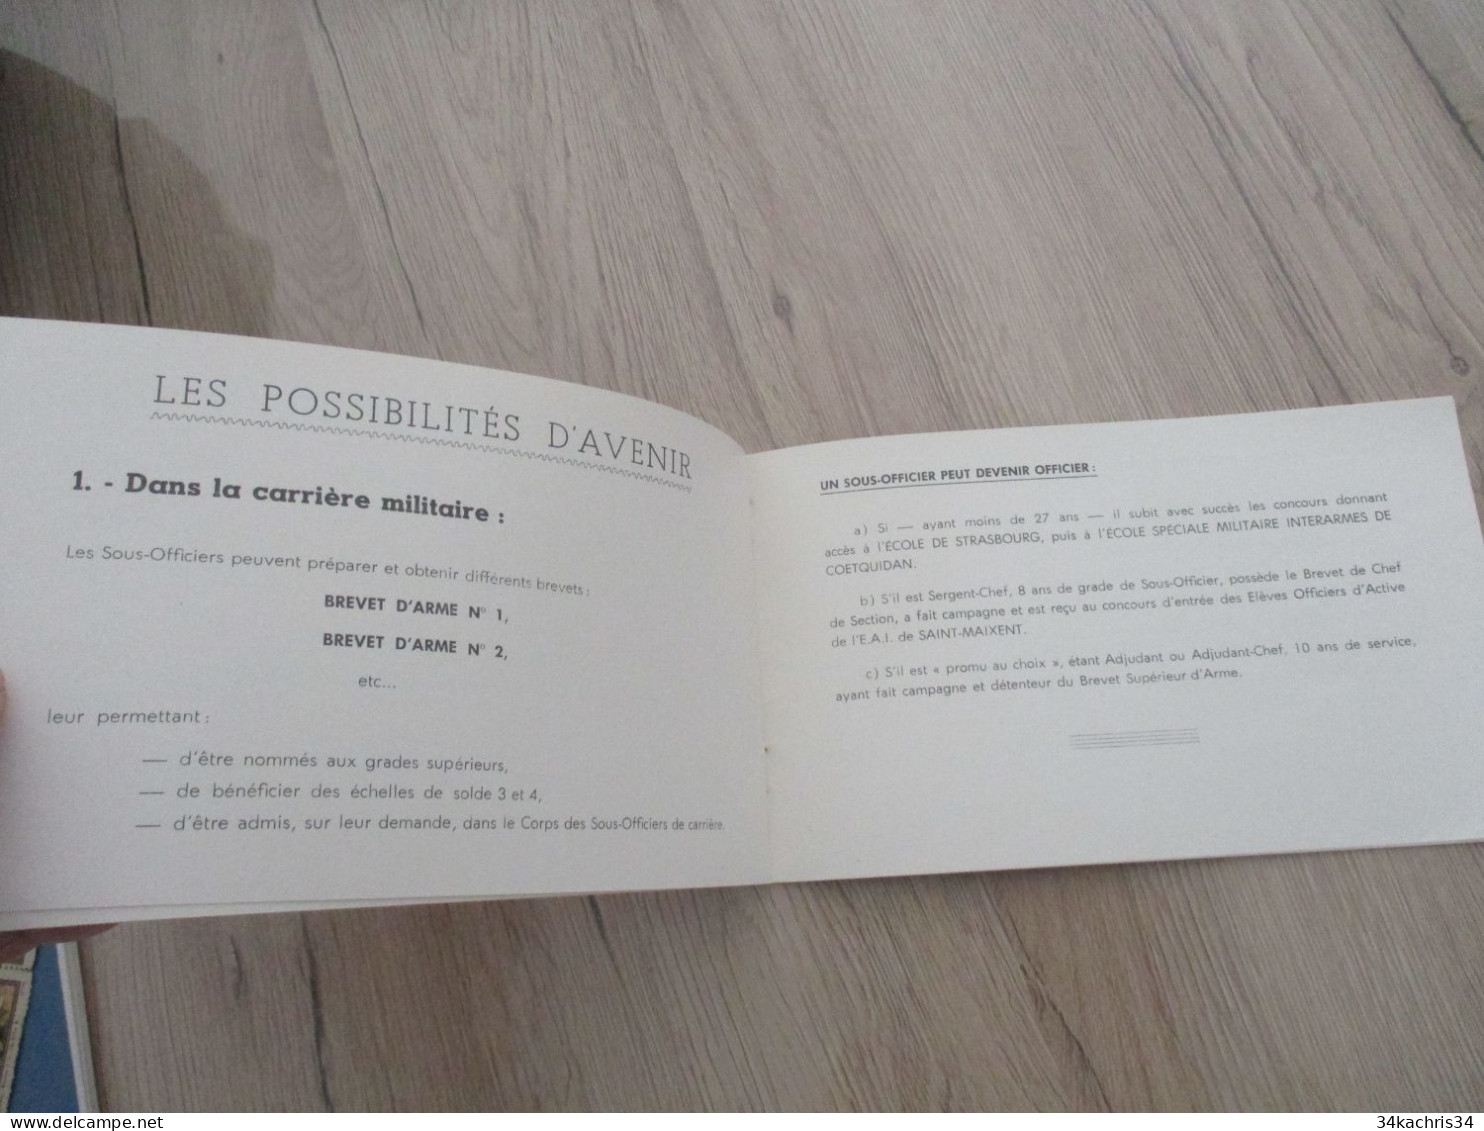 Catalogue Propagande militaire pour le recrutement de sous officiers 1958 imprimerie de l'E.A.I.